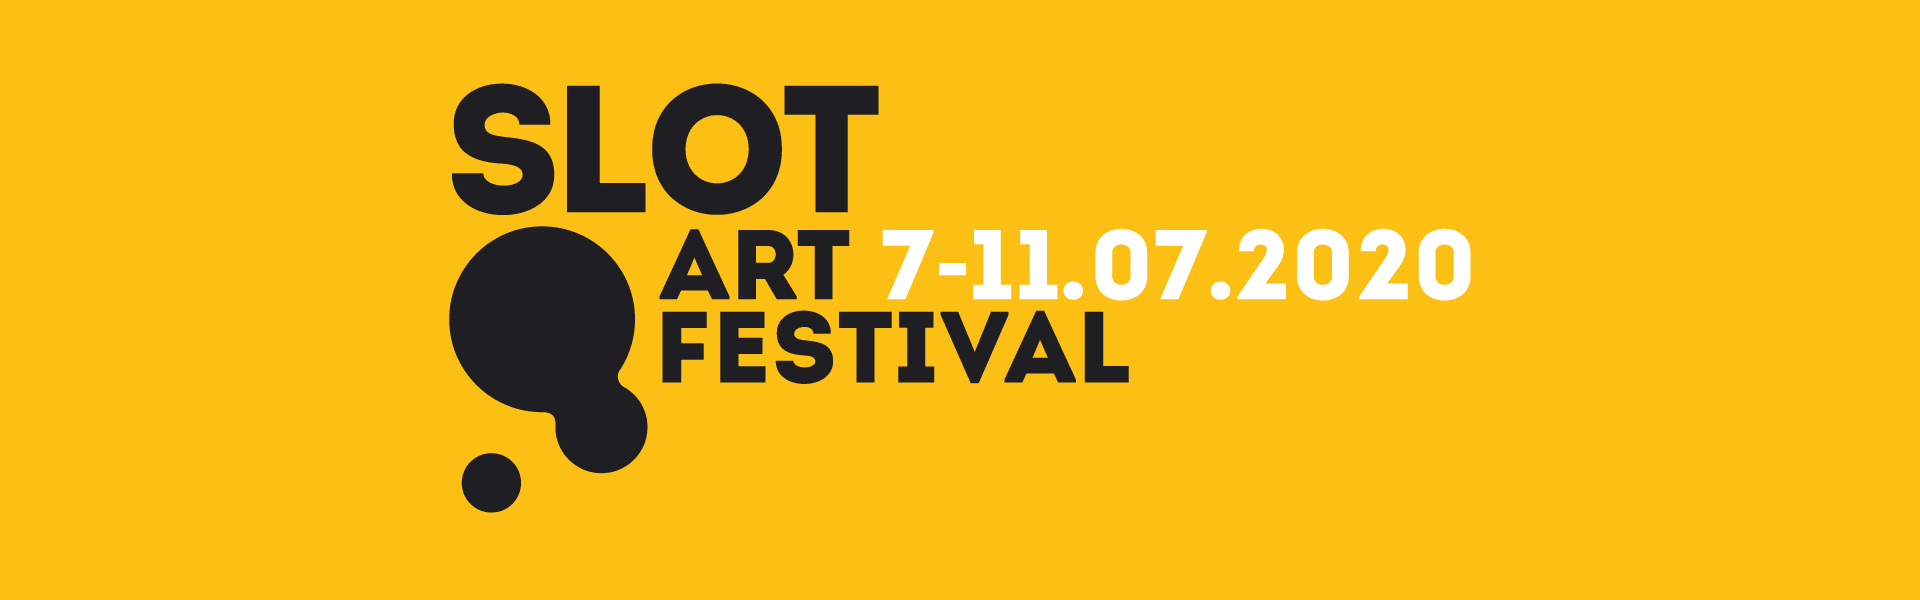 Slot Art Festival